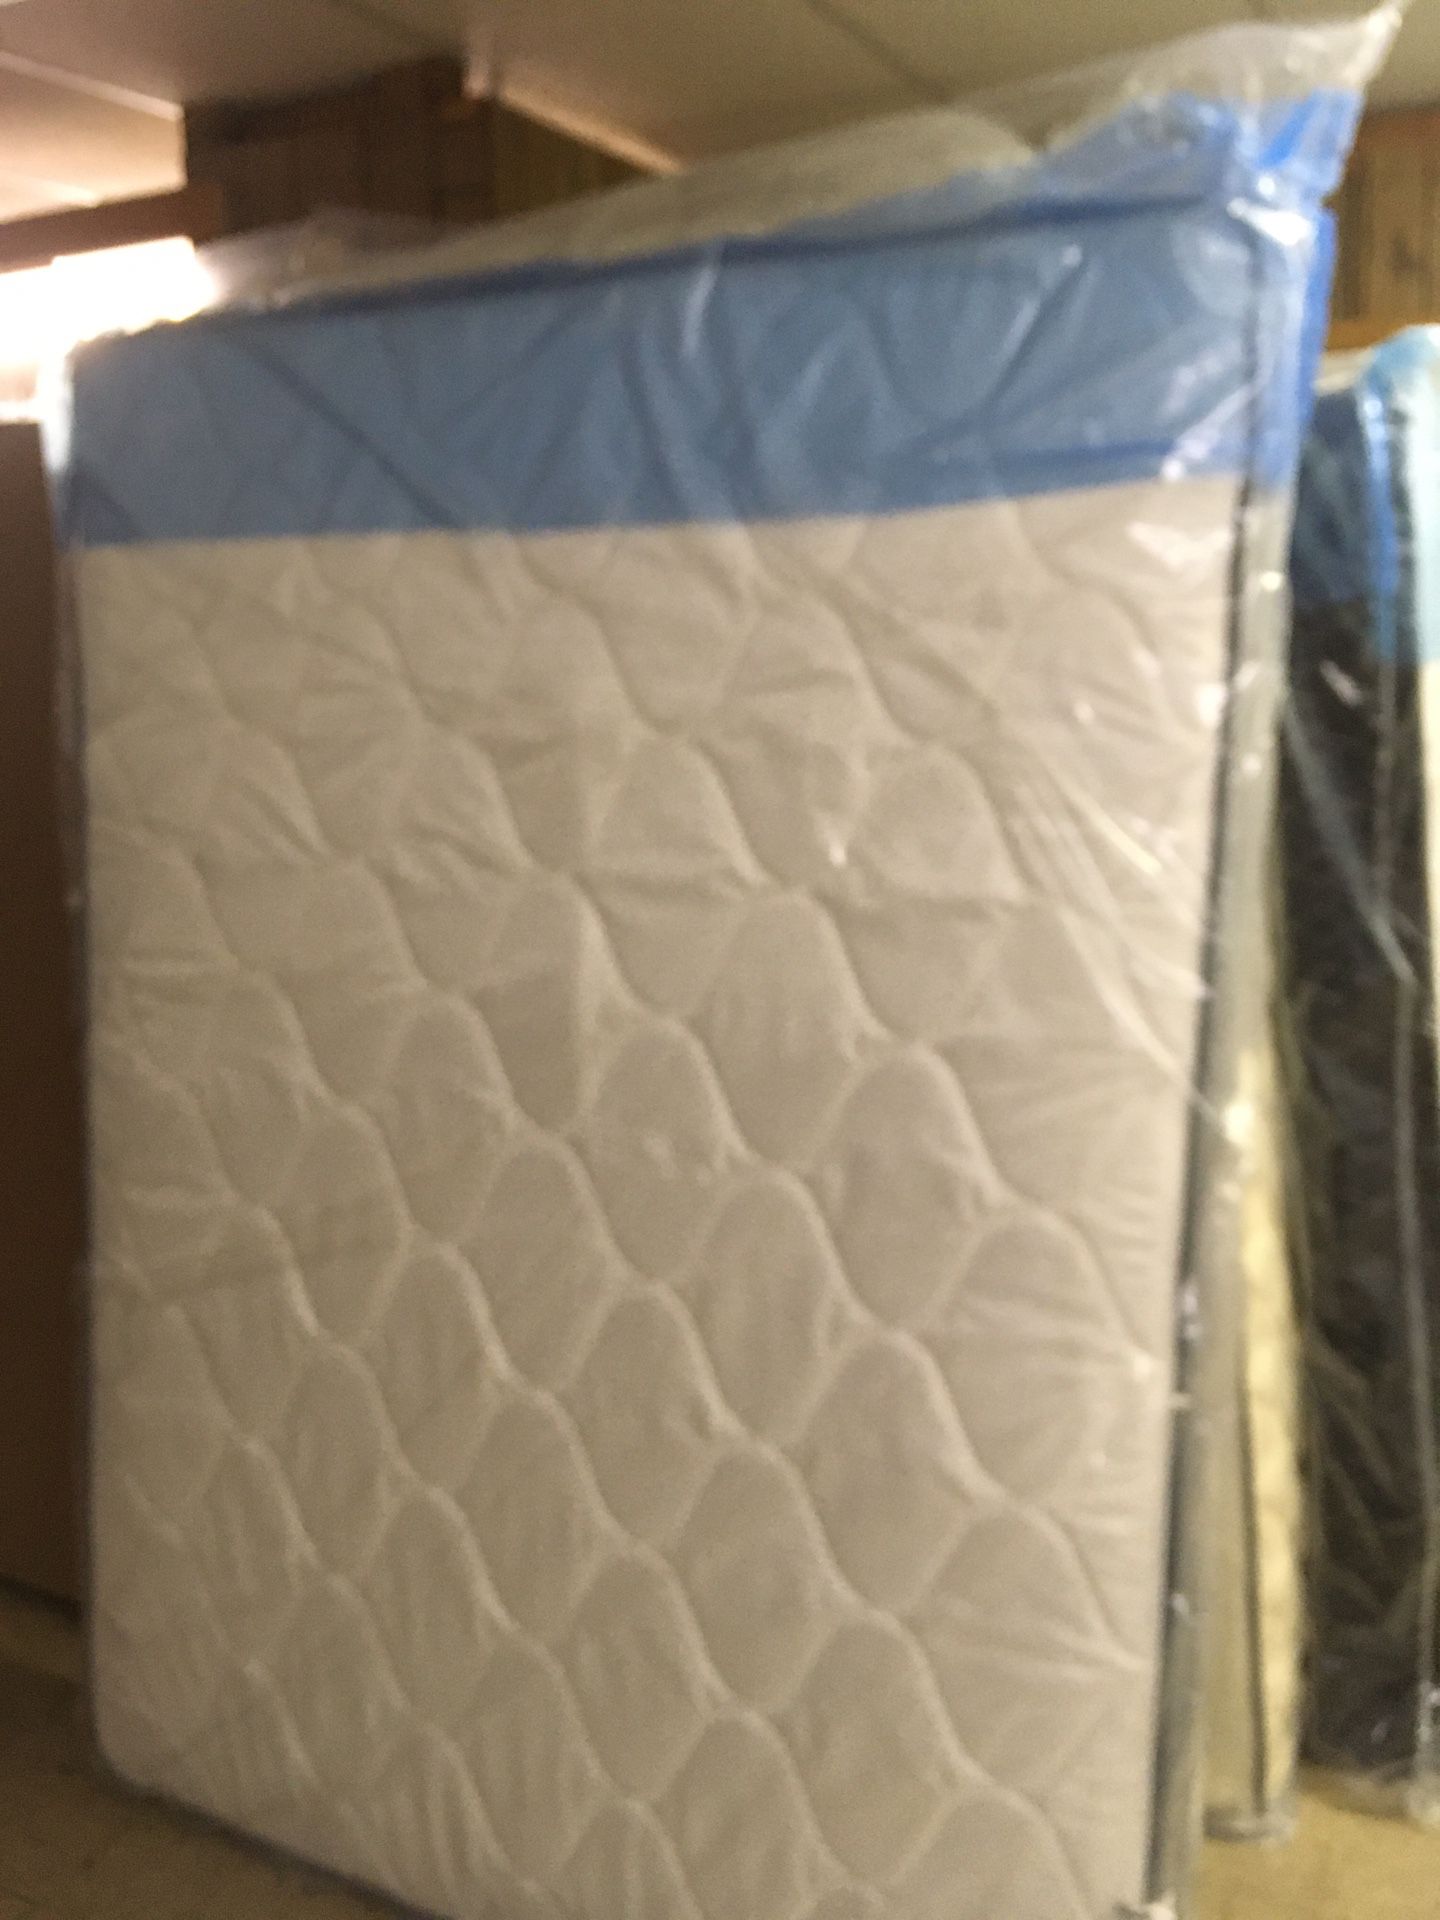 Brand new plush queen size mattress